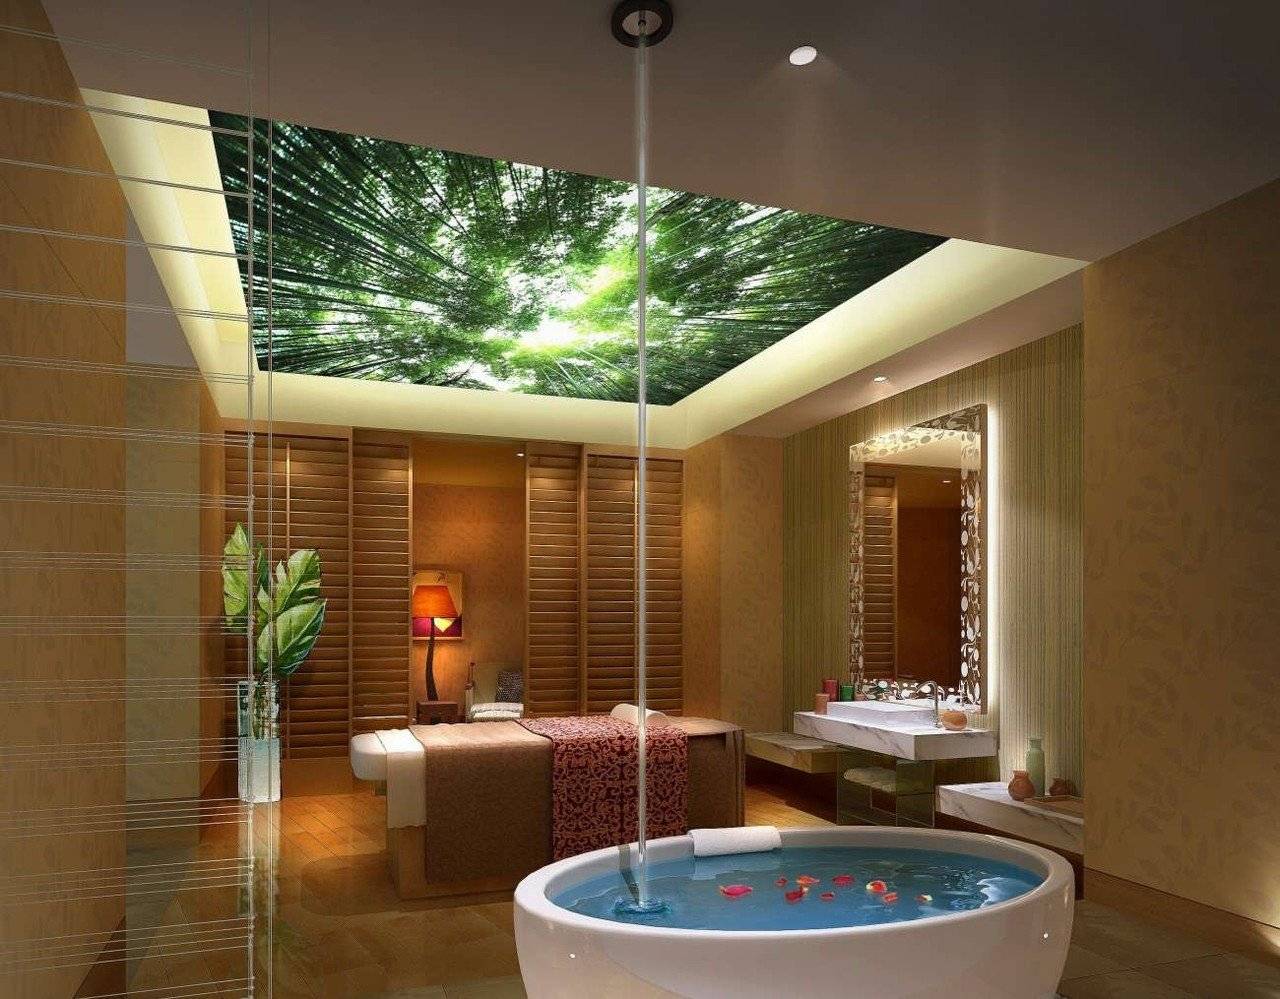 Дизайн потолка в ванной. Типы конструкций и выбор материалов